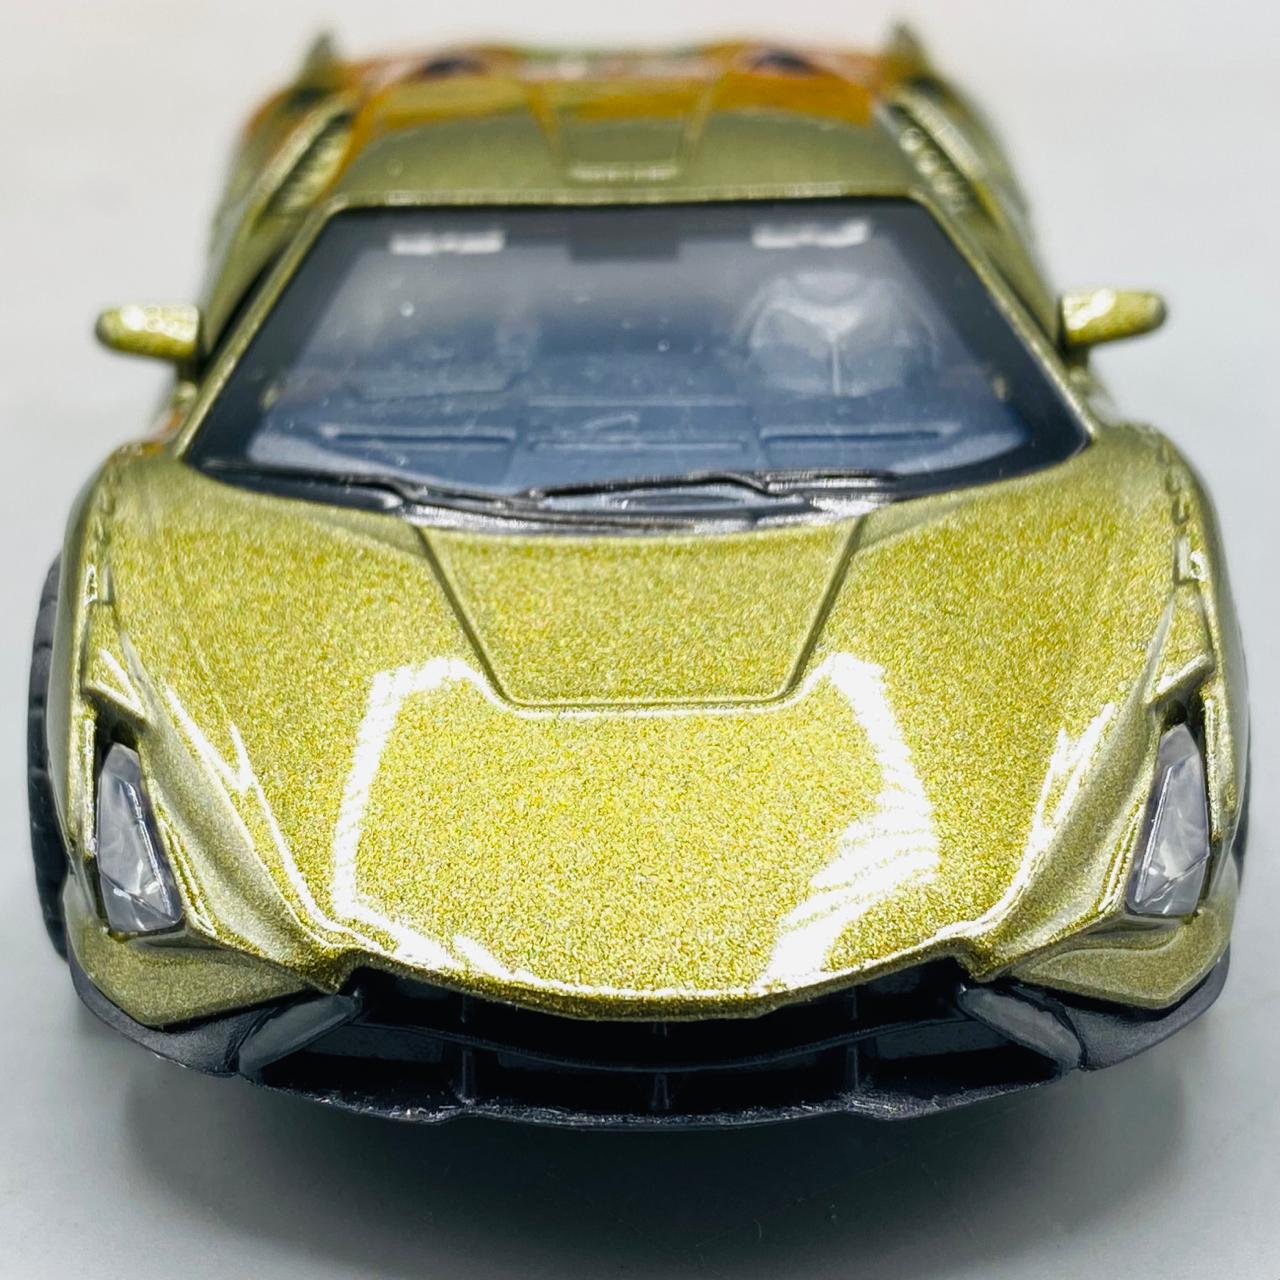 1:32 Lamborghini Sian Die-Cast Model Car